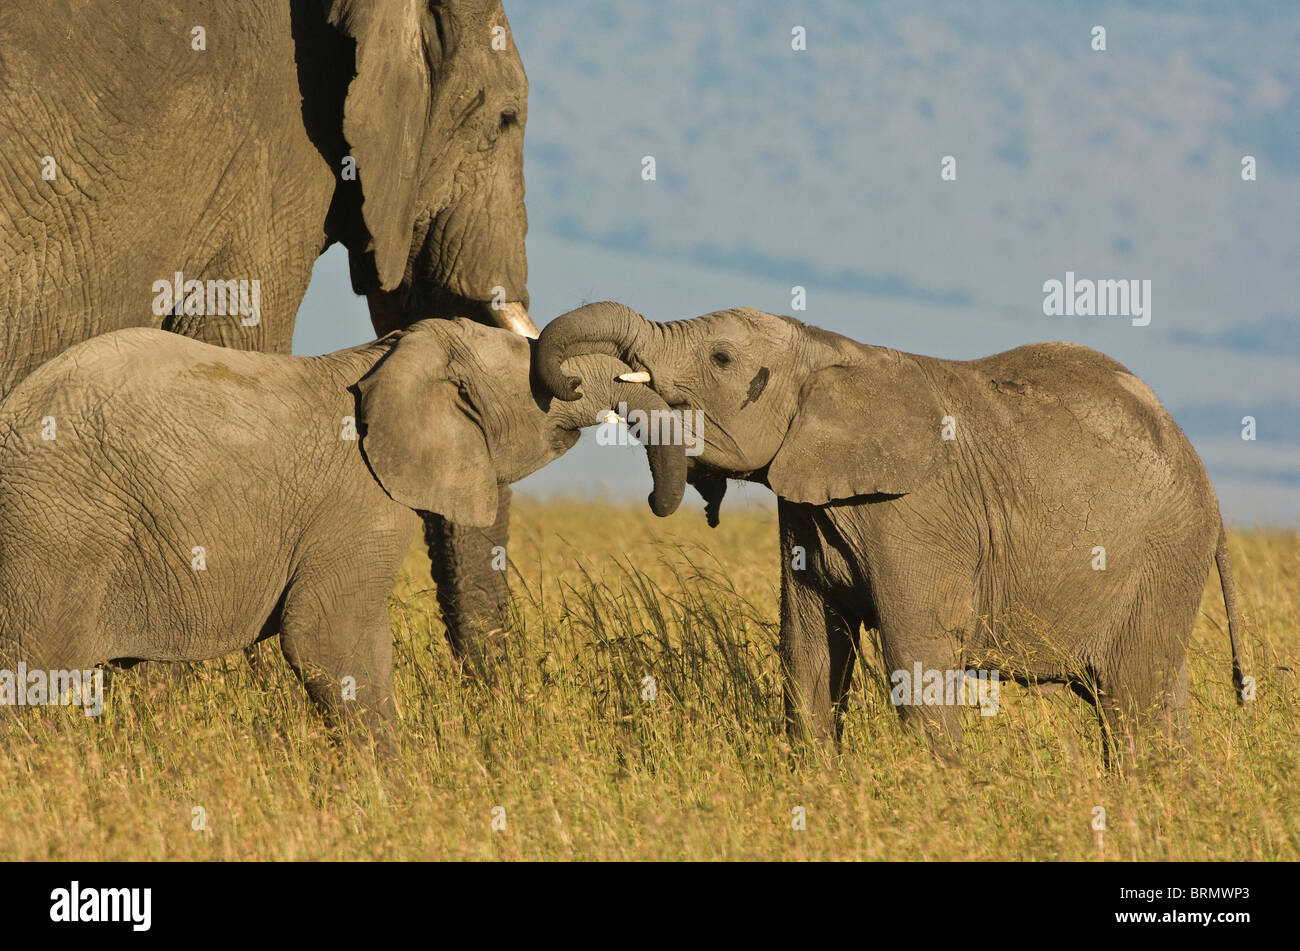 Elefante africano (Loxodonta africana) vitelli intrecciarsi di tronchi in piedi accanto ad un elefante per adulti Foto Stock